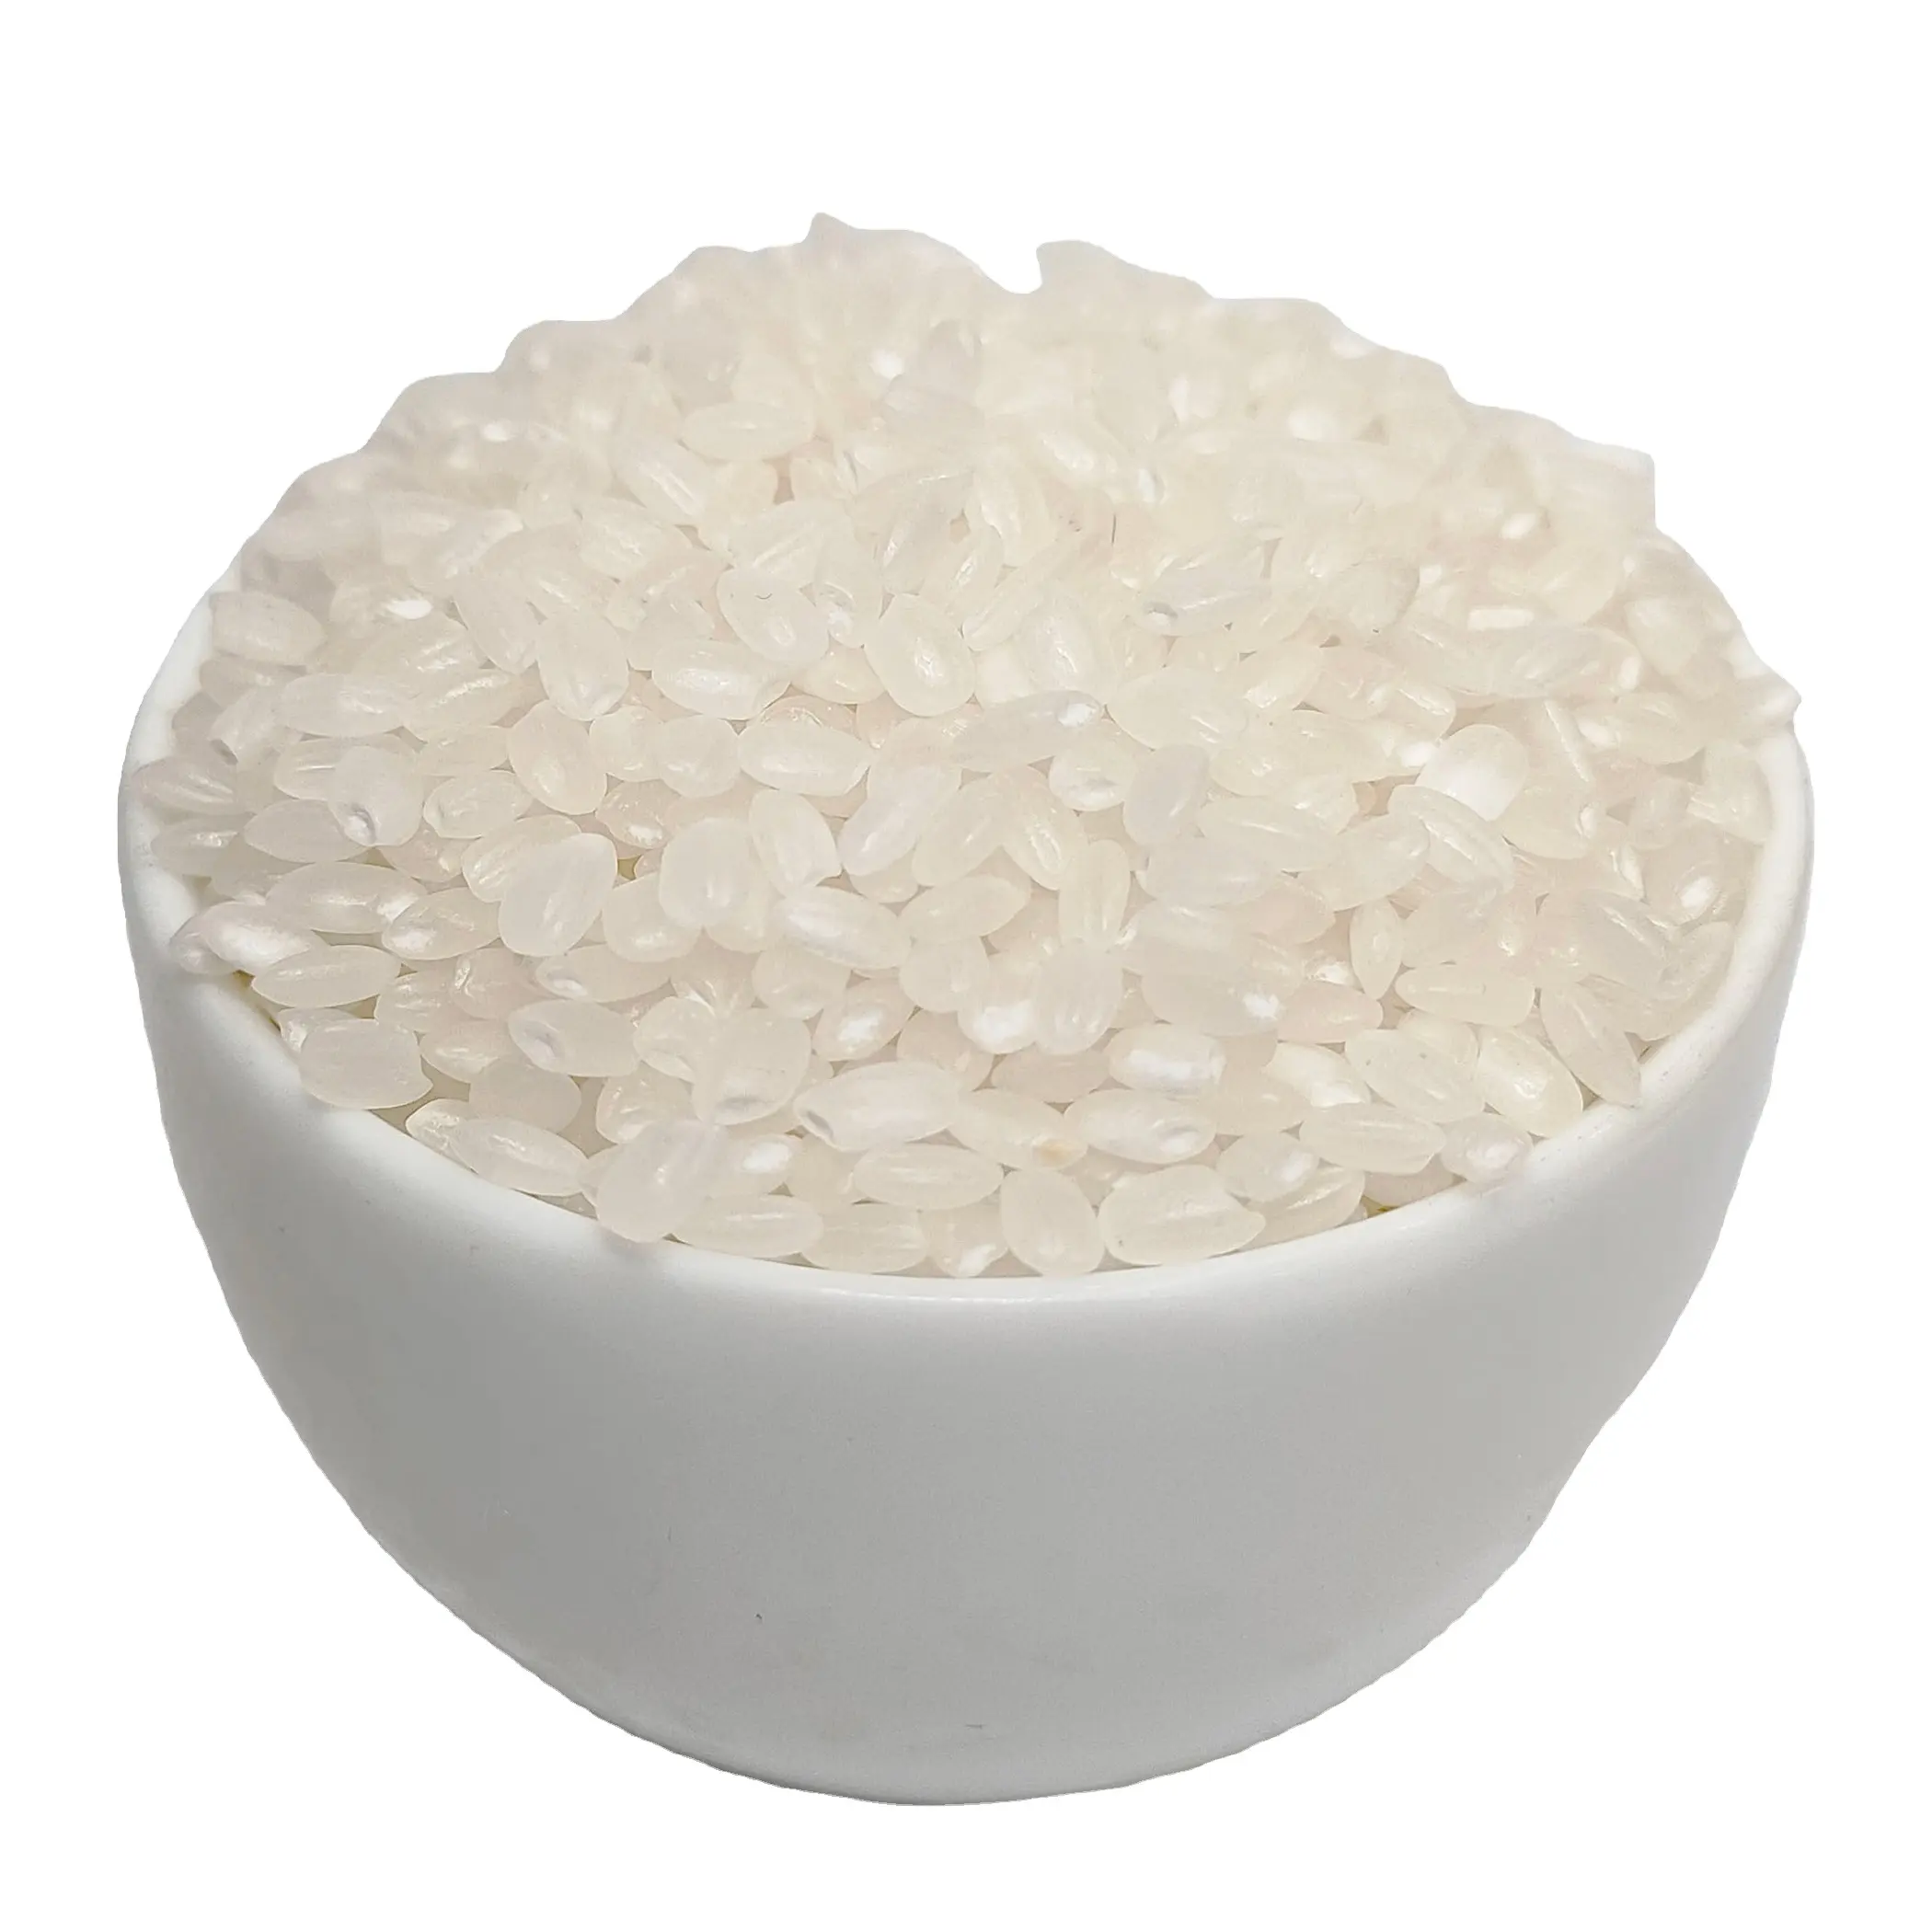 Meilleur riz vietnamien pour l'exportation JAPONICA 5% grain court cassé, riz parfumé de haute qualité vient du Vietnam disponible à l'usine